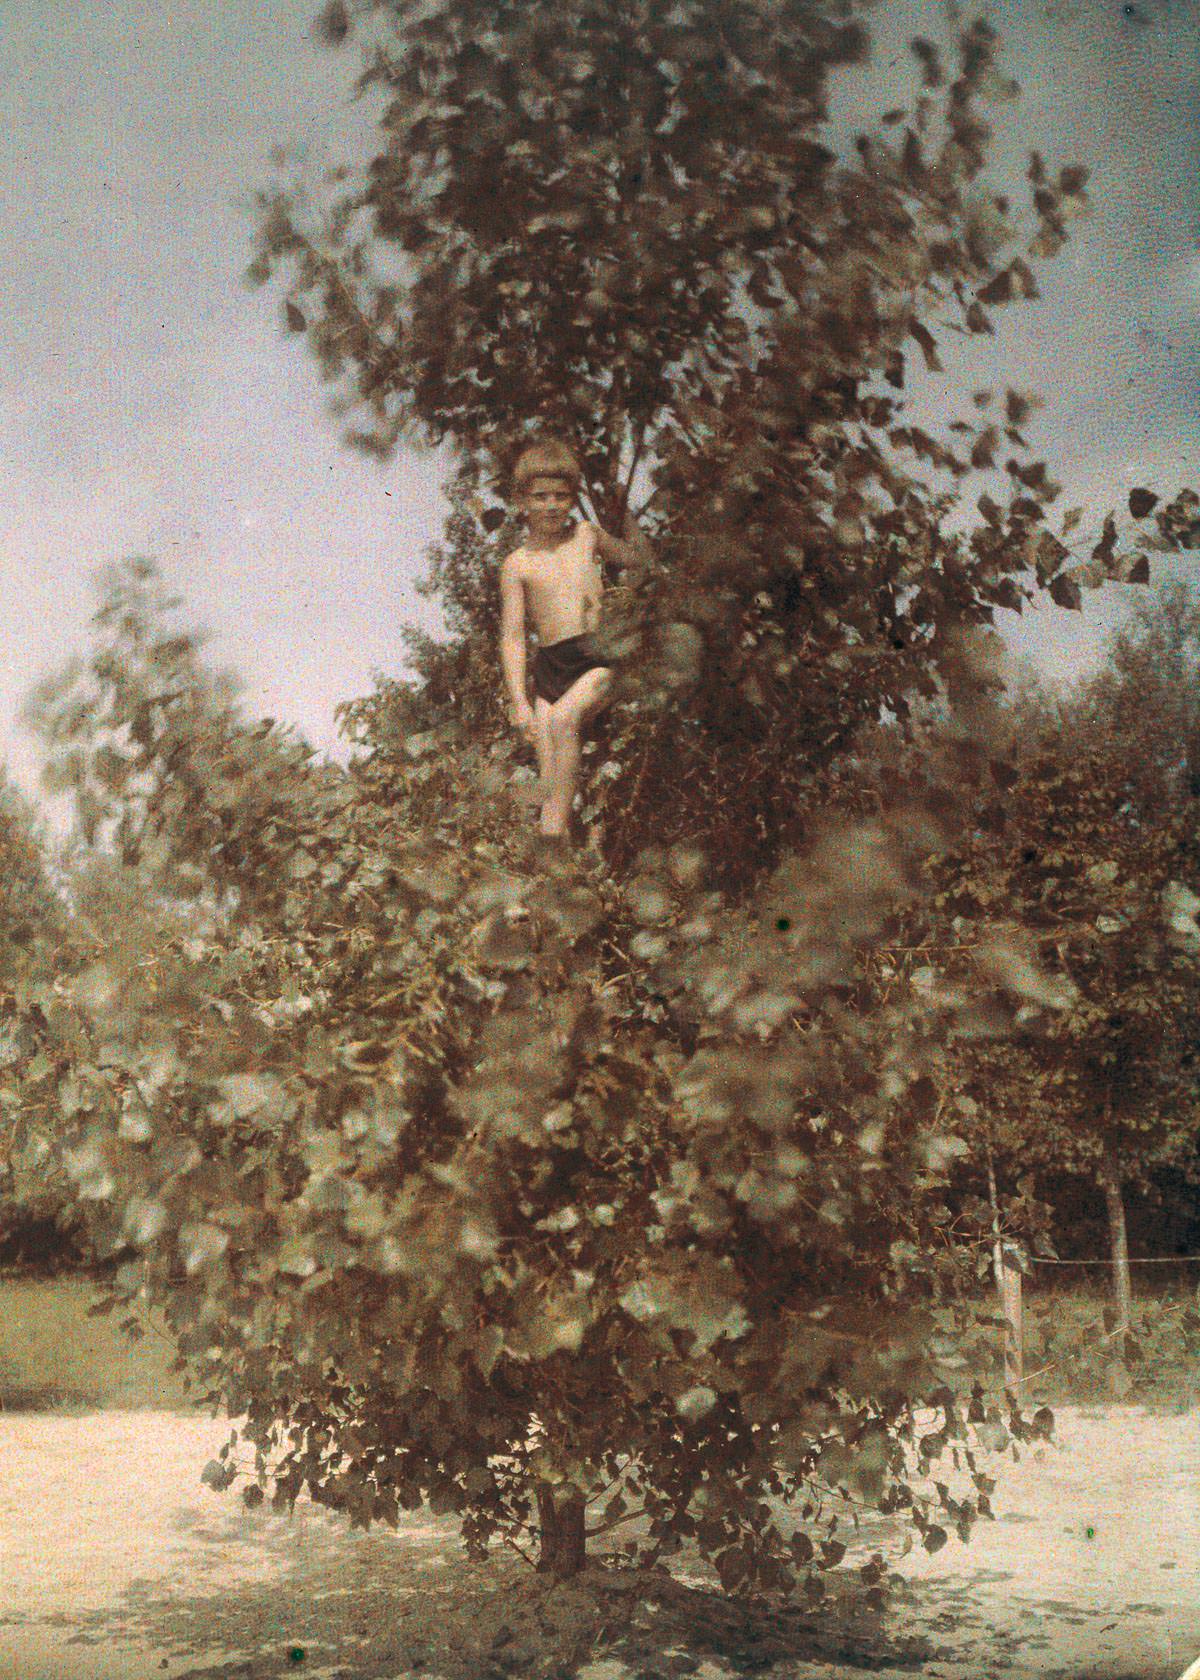 Boy in a tree.c. 1920